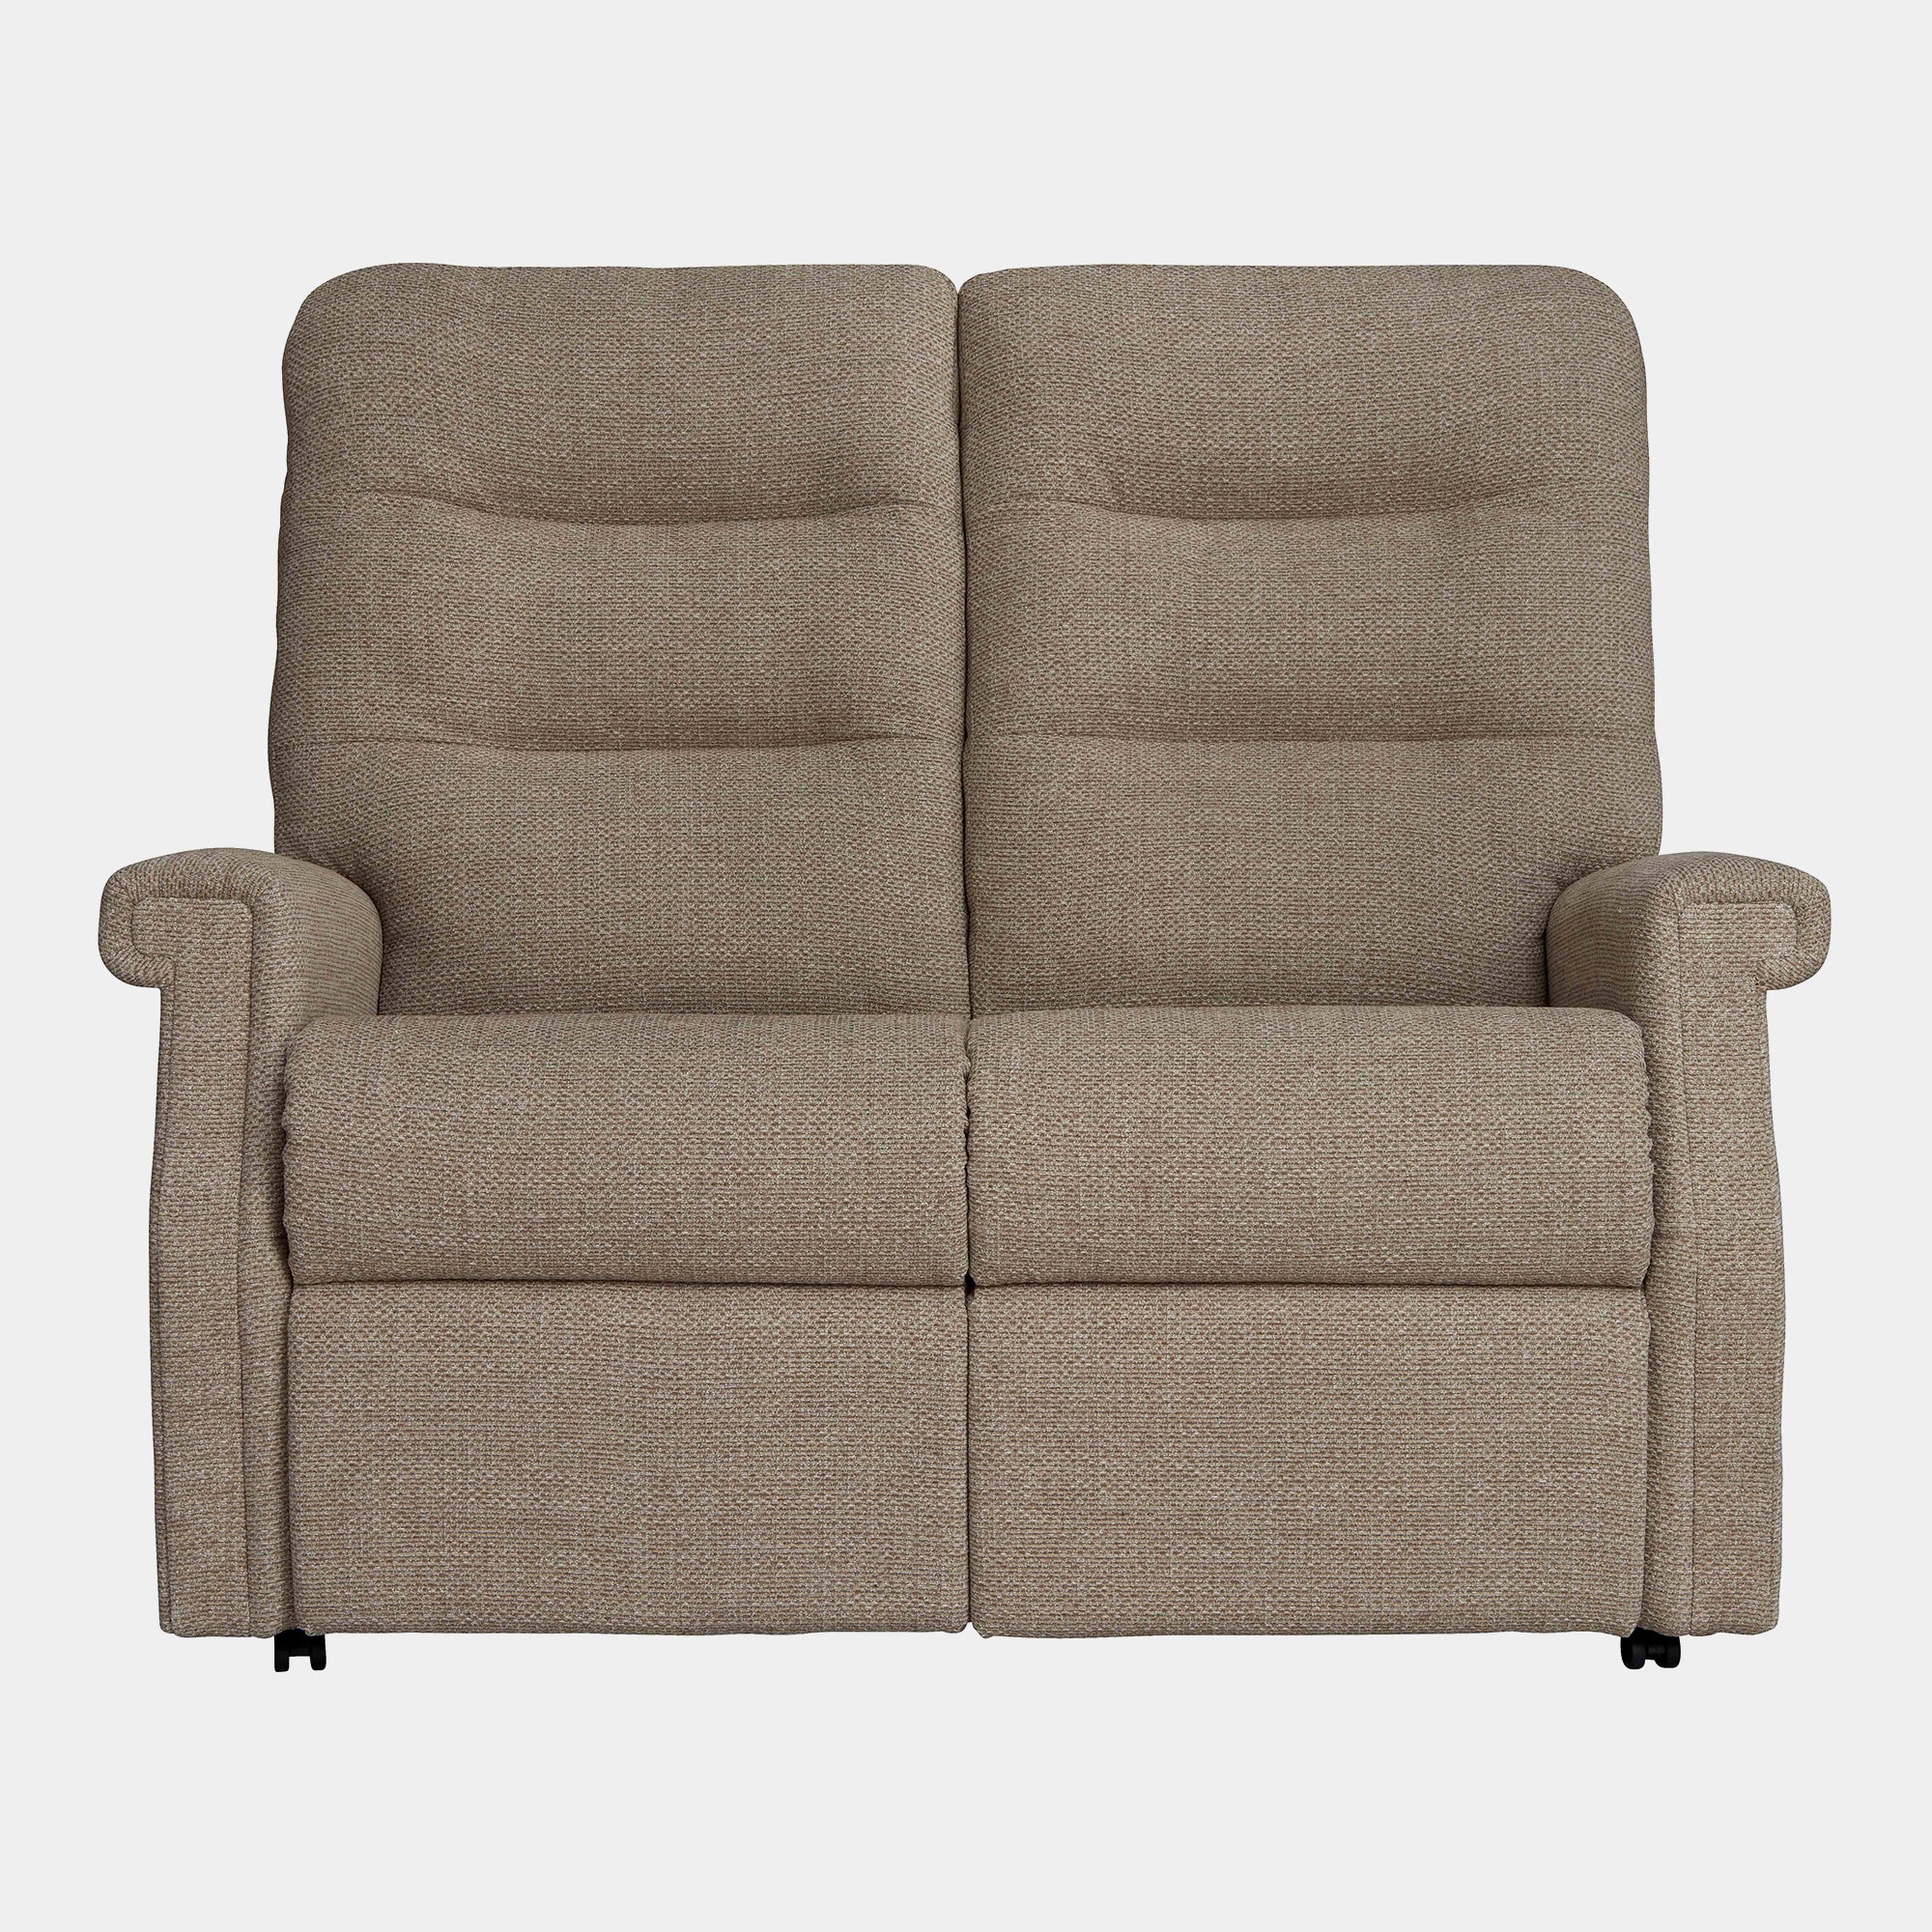 Lansdowne - 2 Seat Sofa In Fabric Manual Recliner